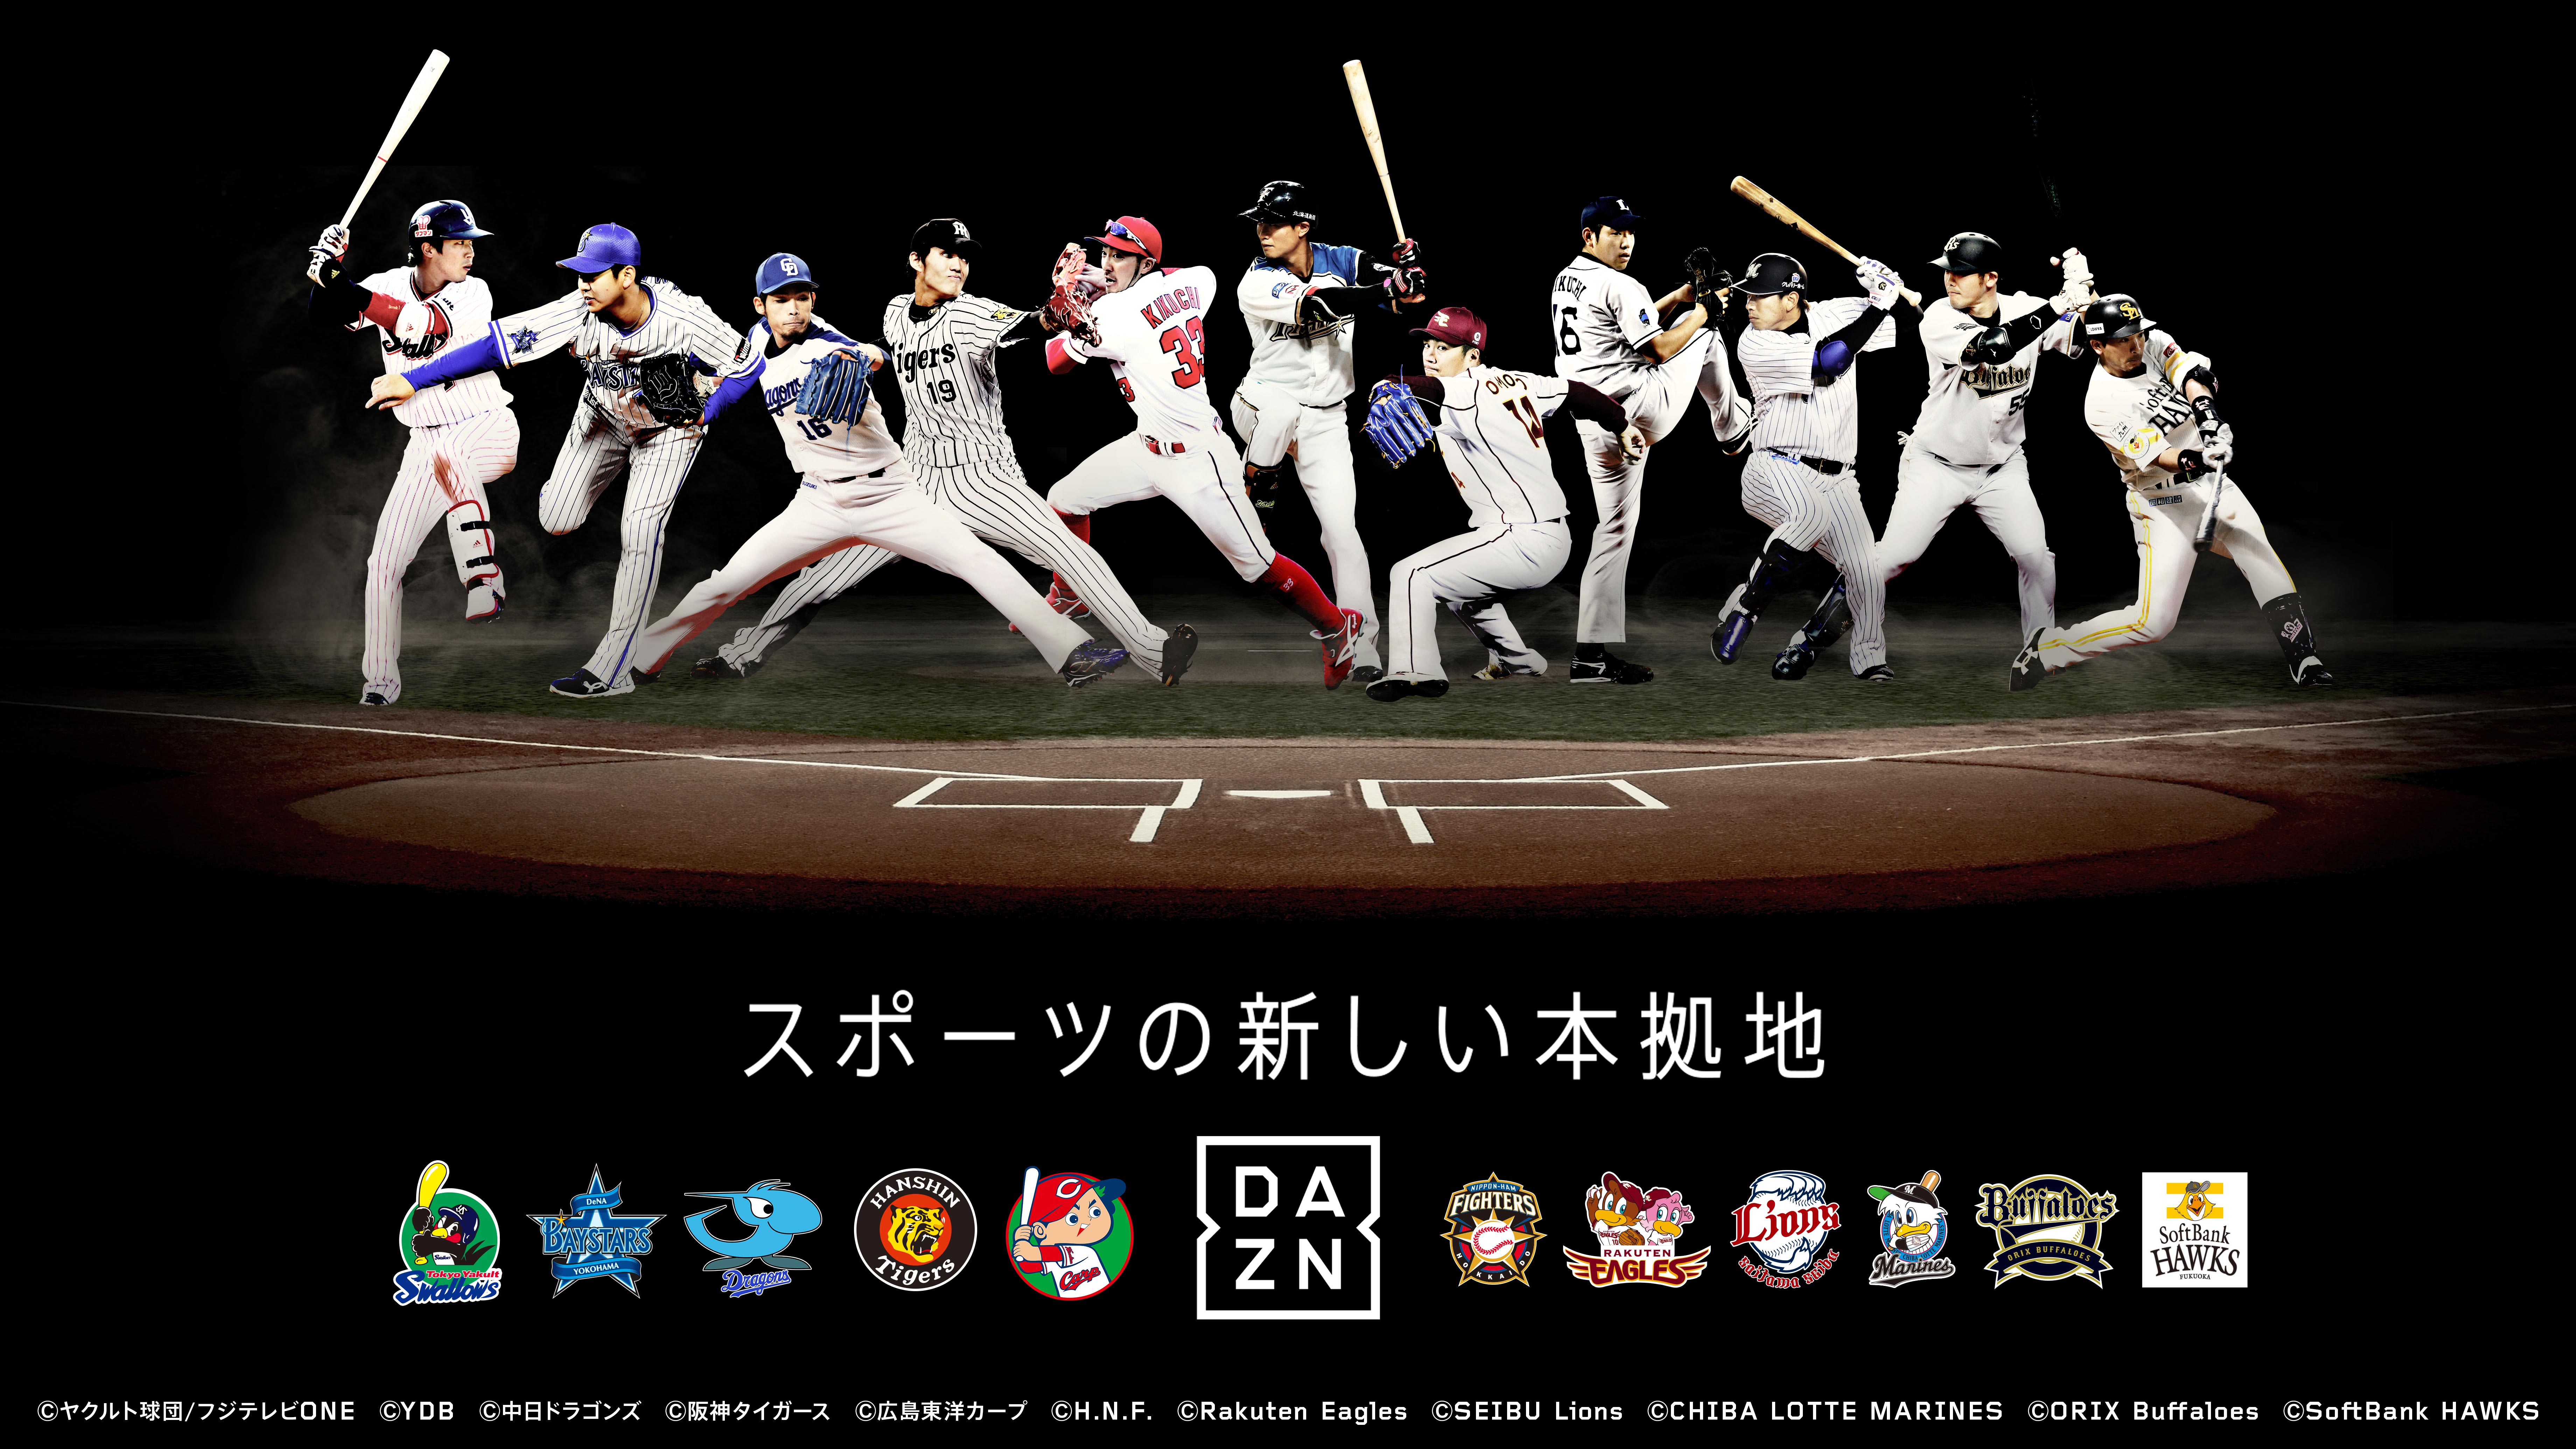 プロ野球11球団の主催試合が Dazn で視聴可能に Baseball King